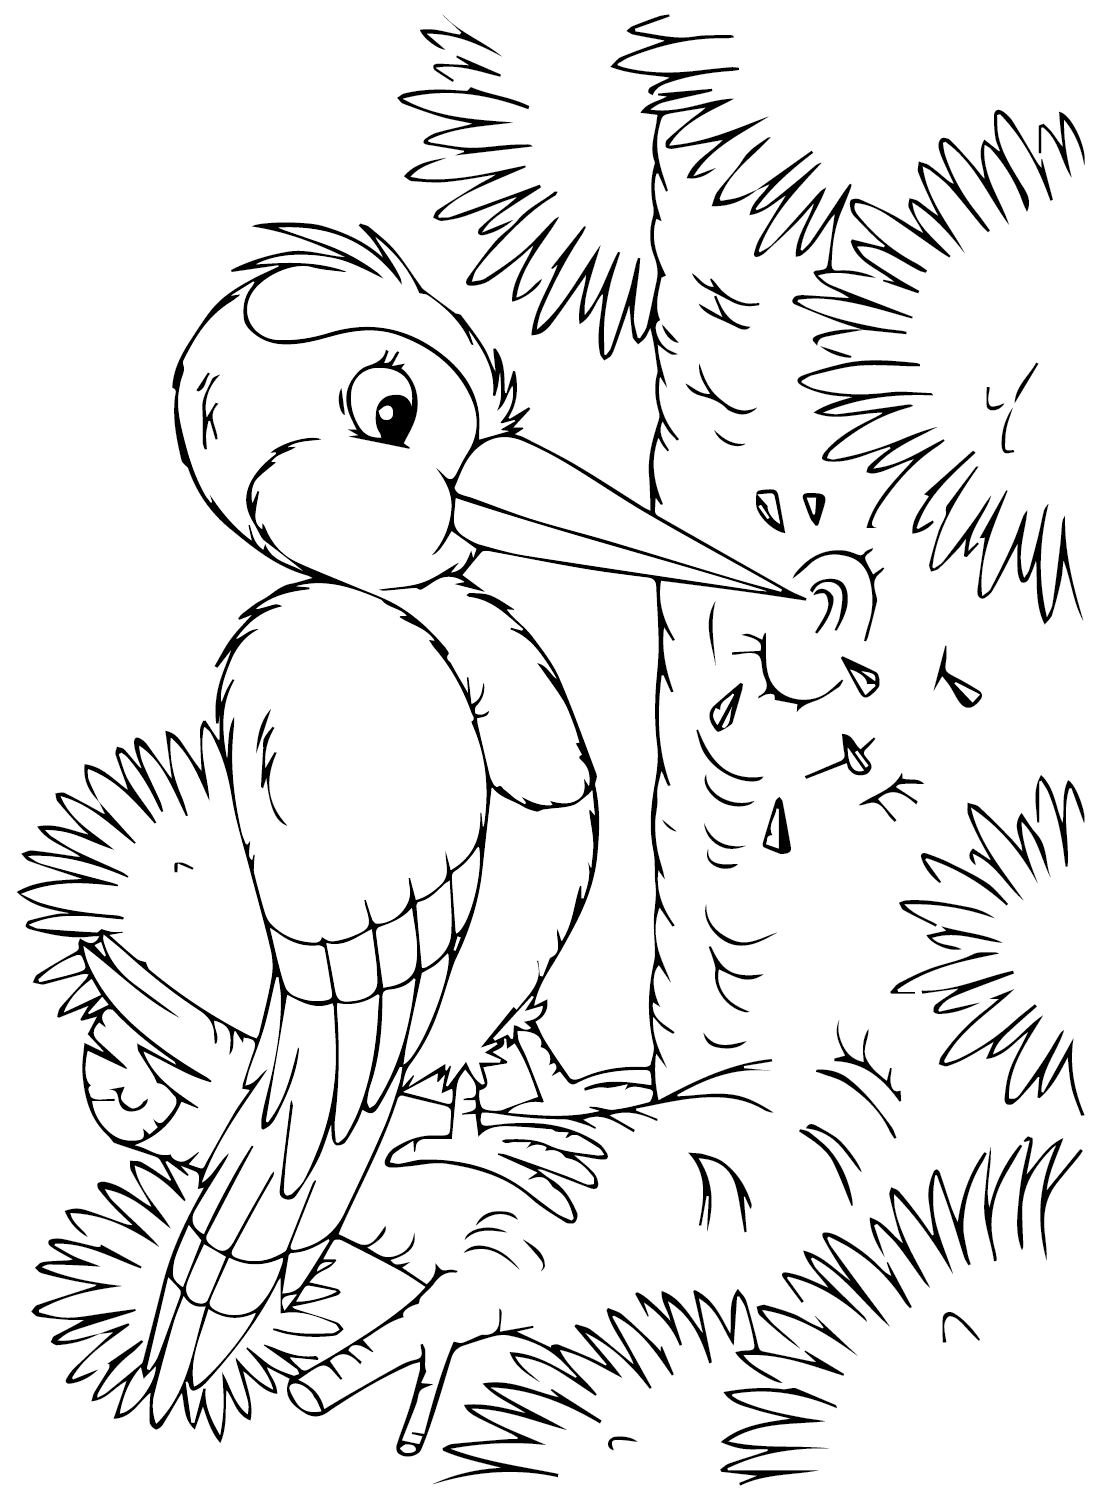 Página para colorear de pájaro carpintero gratis de Woodpecker